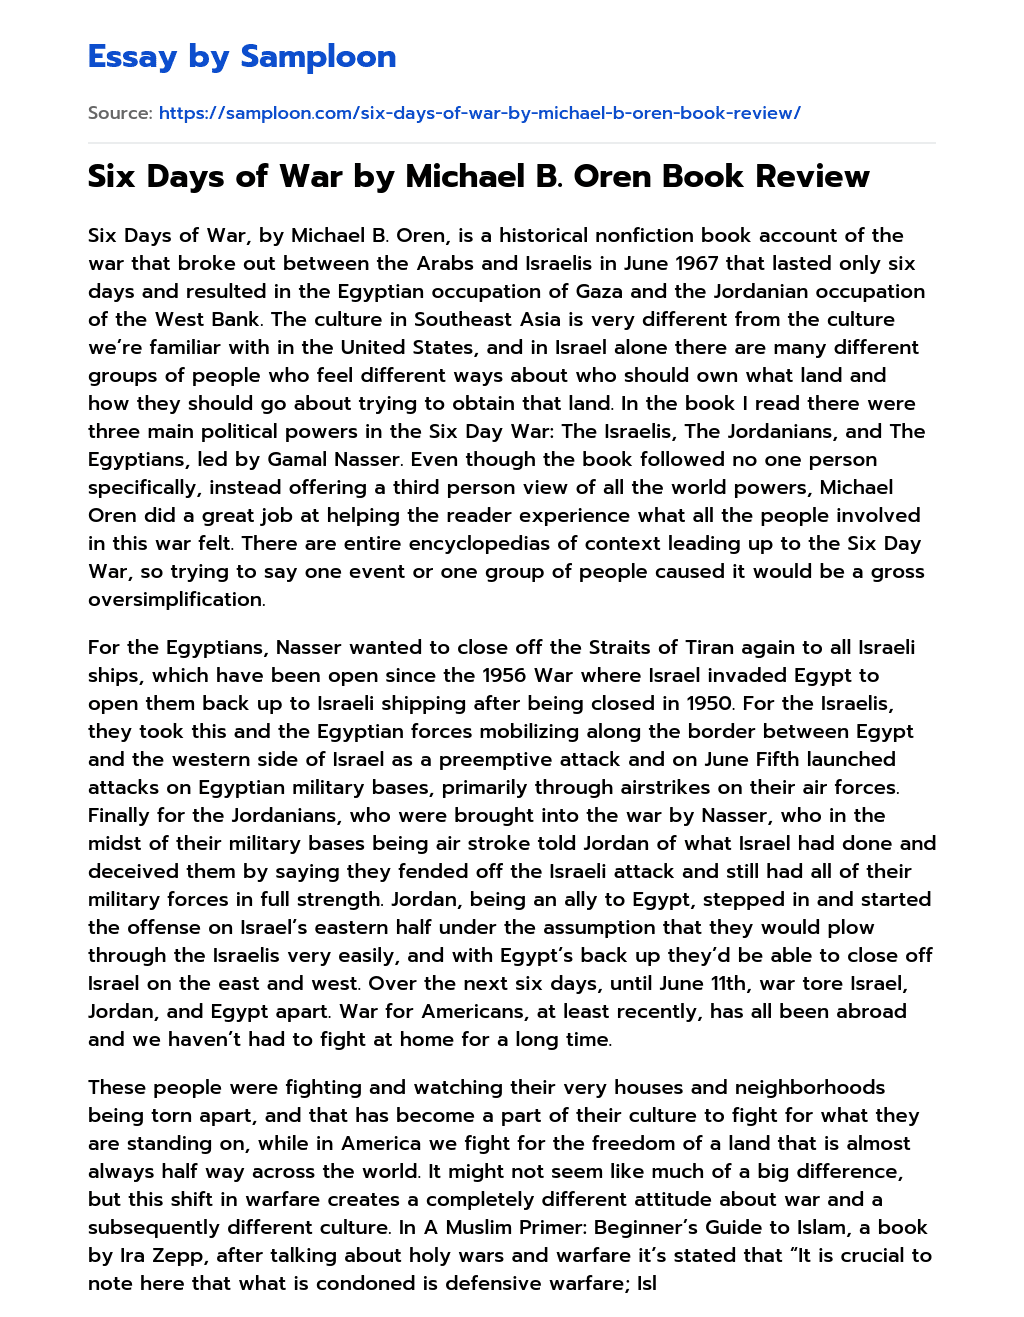 Six Days of War by Michael B. Oren Book Review essay